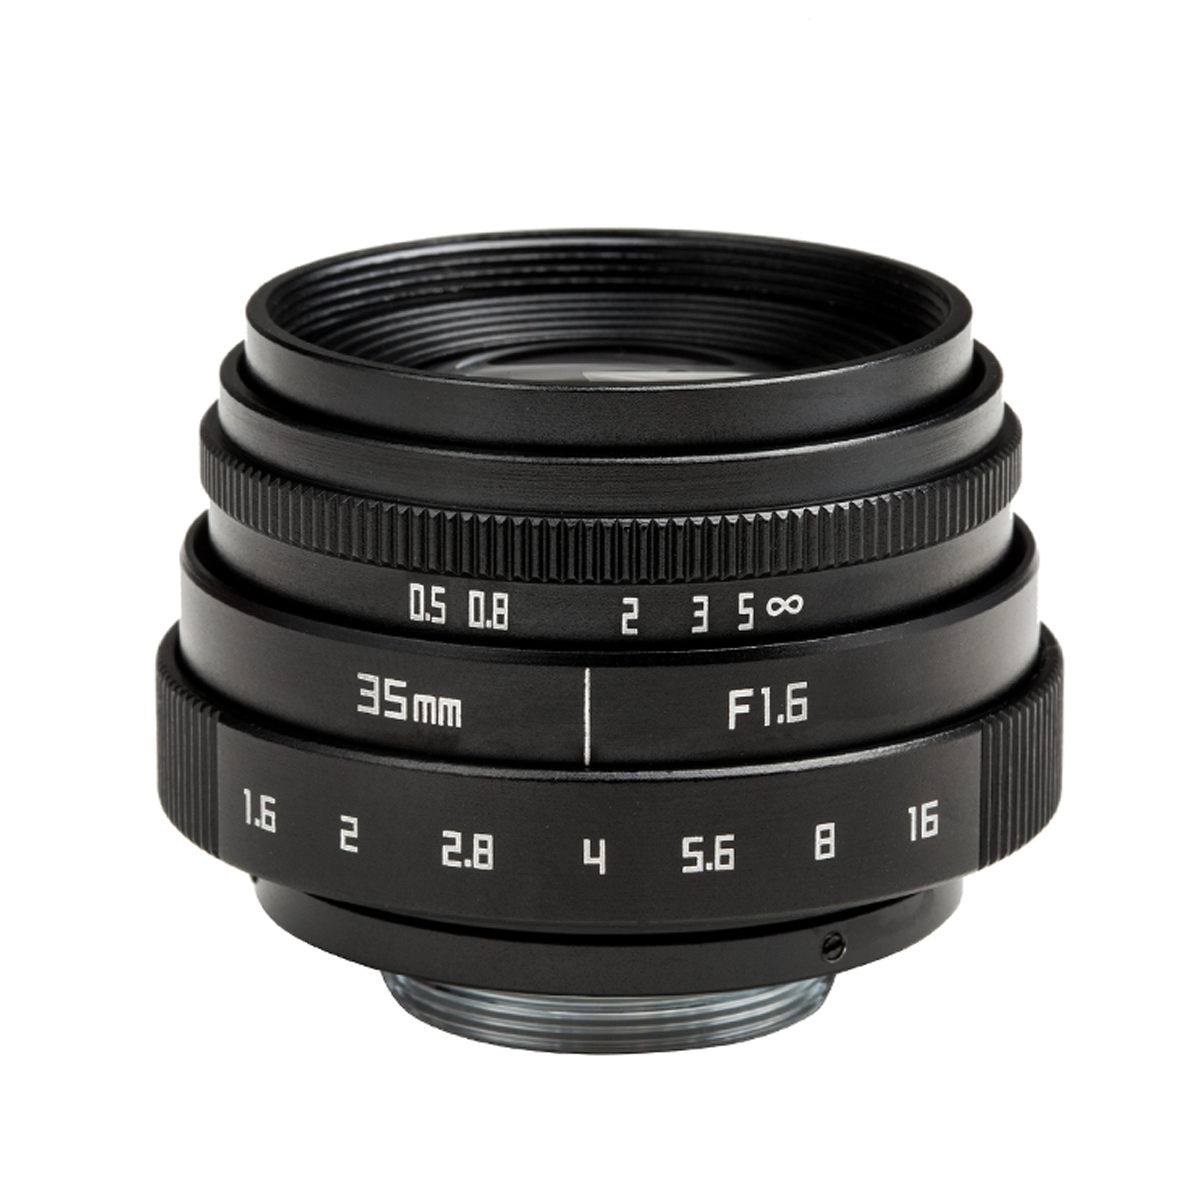 微单镜头35mm F1.6 厂家直销 定焦相机镜头简易版C口- 黑色第Ⅵ代 CH013B